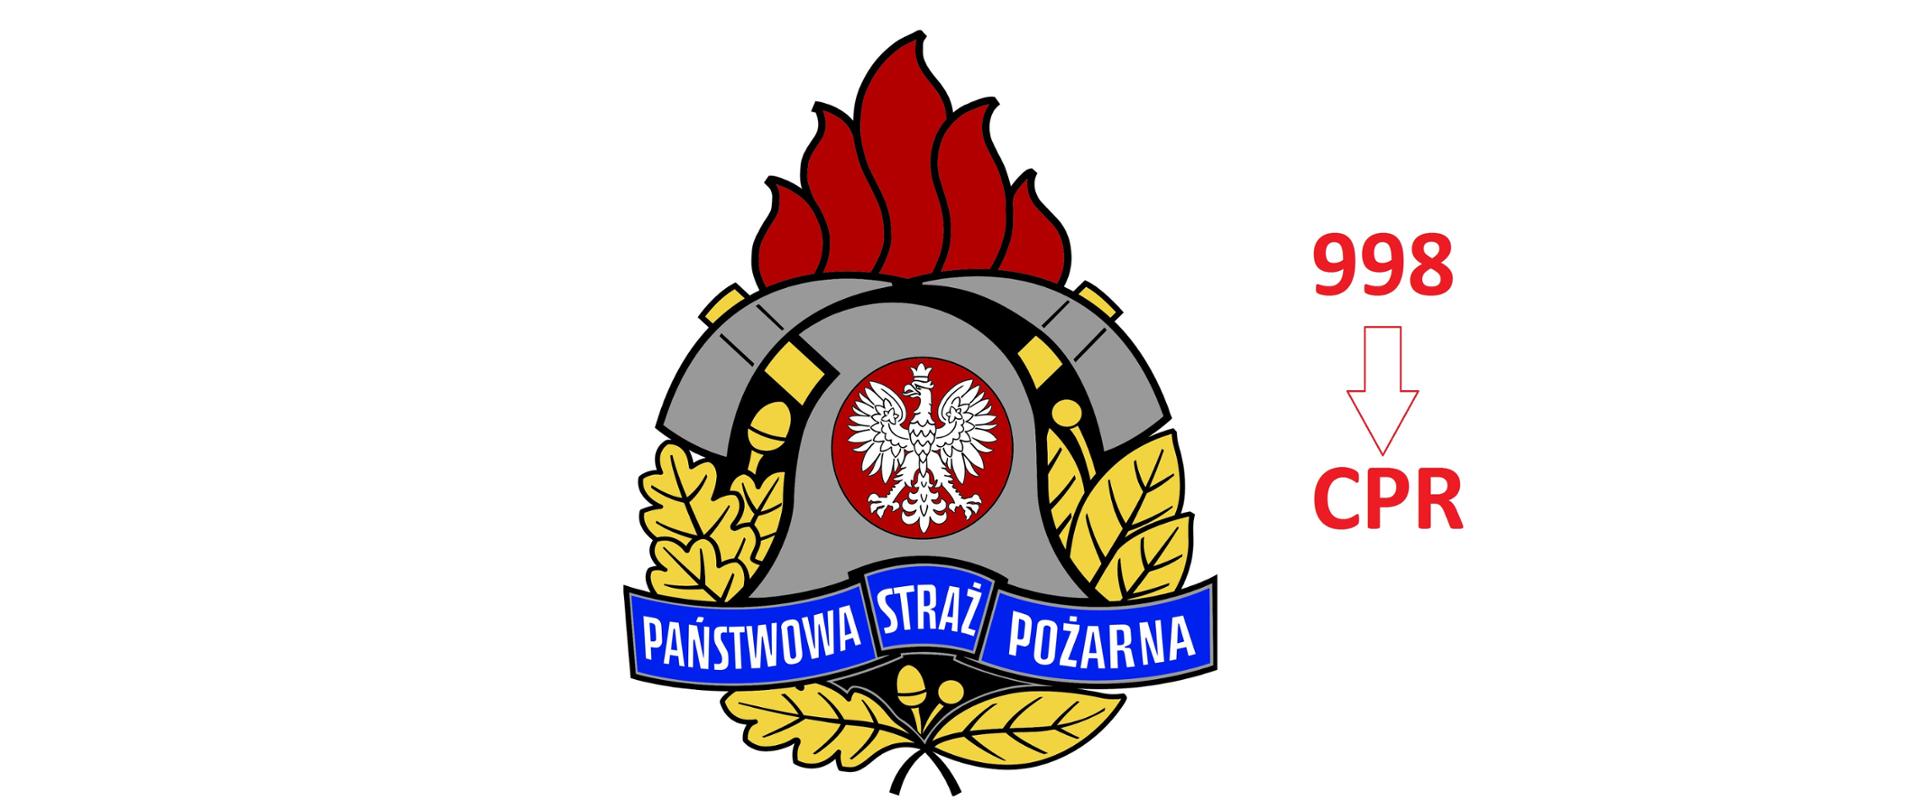 Logo Państwowej Straży Pożarnej i obok numer alarmowy 998 przekierowany do Centrum Powiadamiania Ratunkowego. 